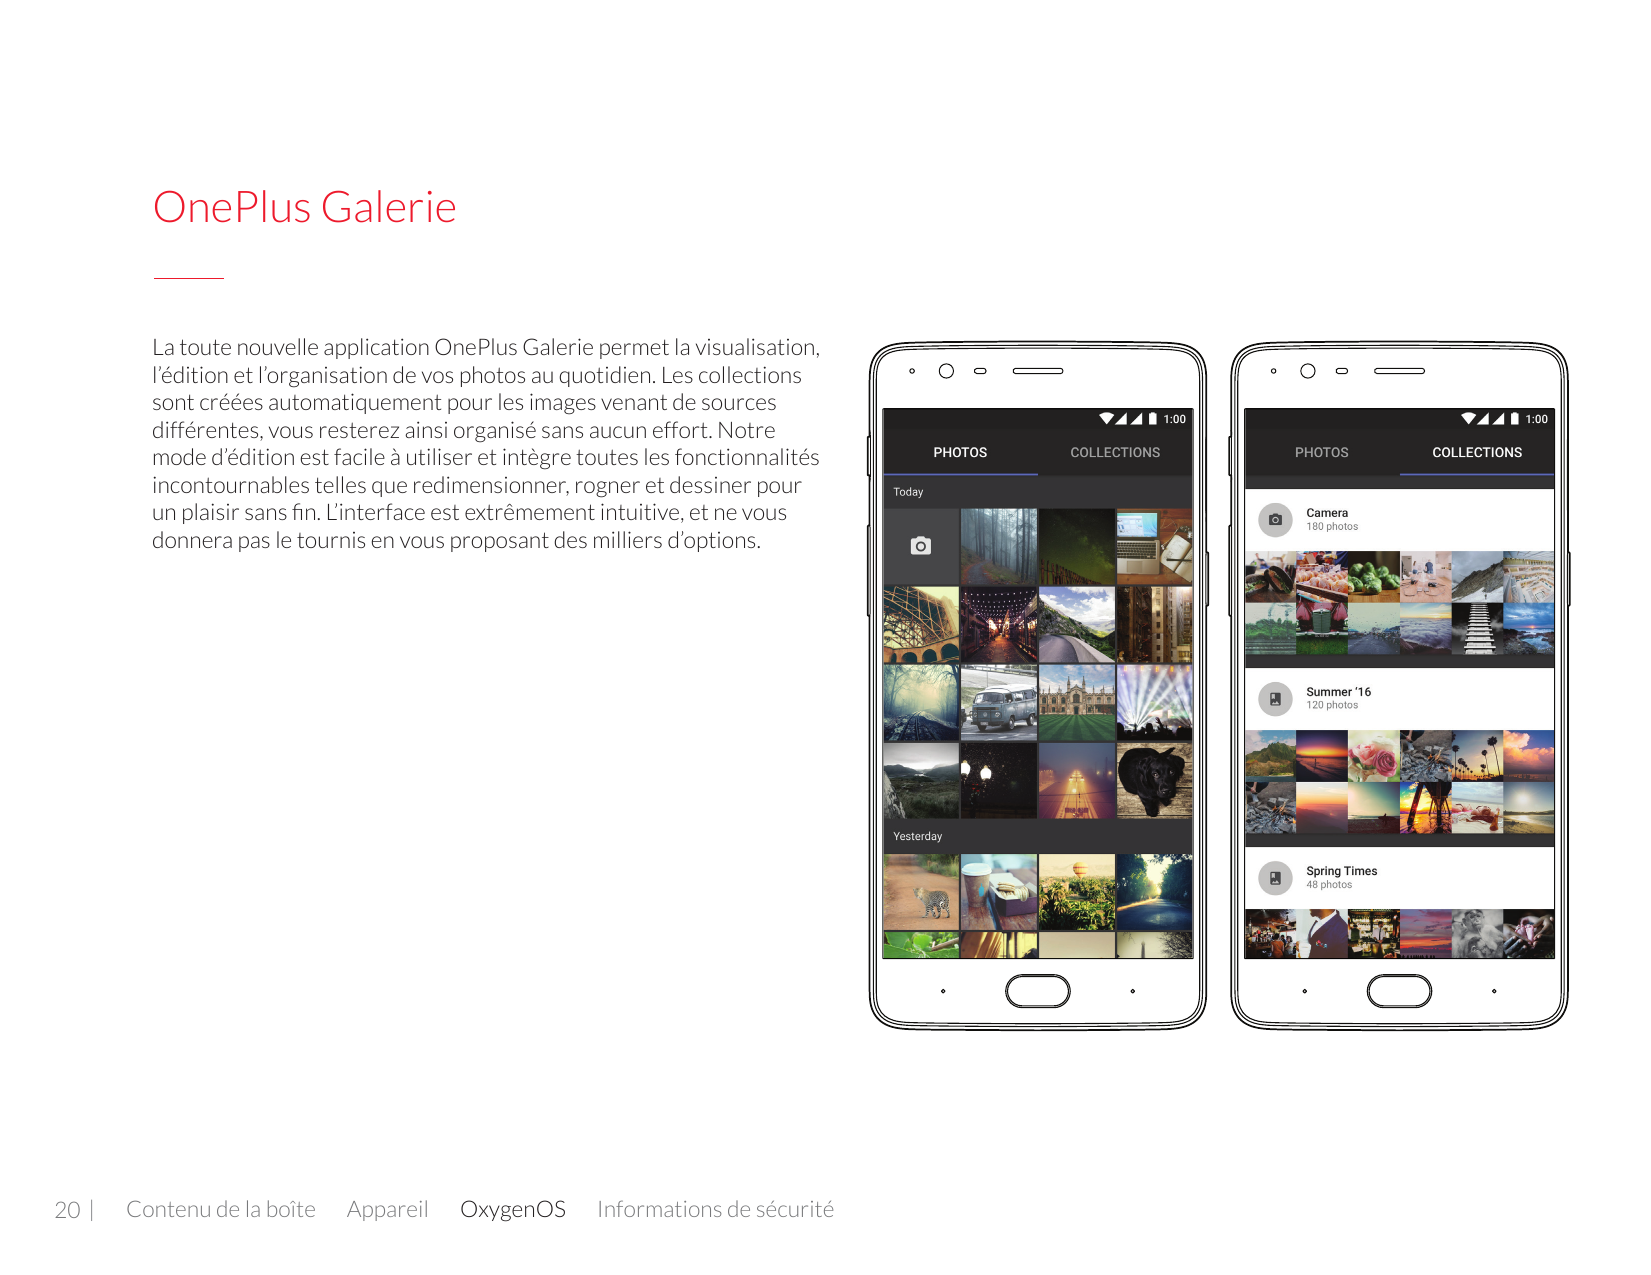 OnePlus GalerieLa toute nouvelle application OnePlus Galerie permet la visualisation,l’édition et l’organisation de vos photos a